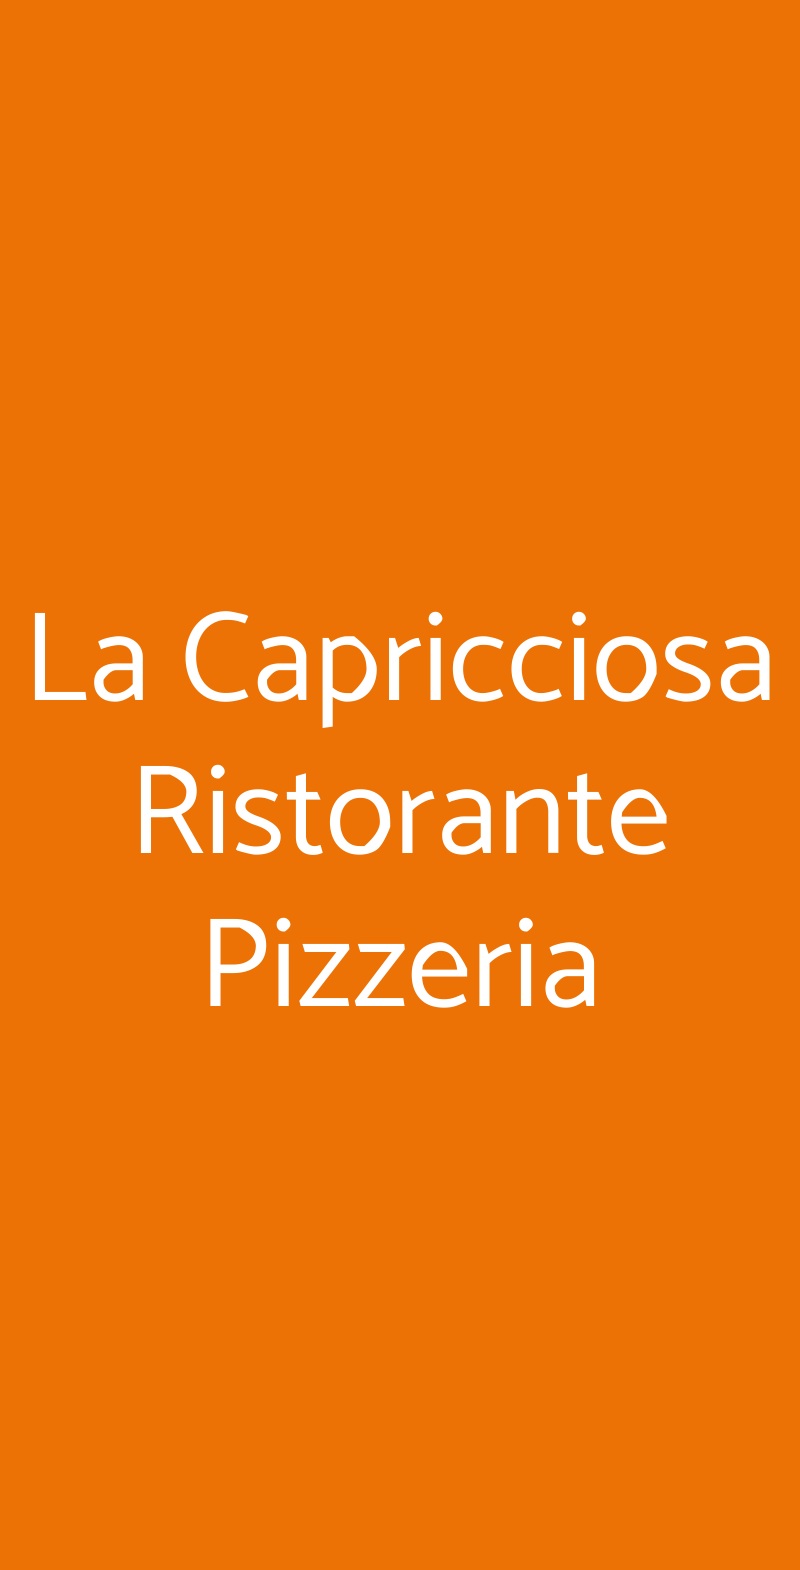 La Capricciosa Ristorante Pizzeria Torino menù 1 pagina